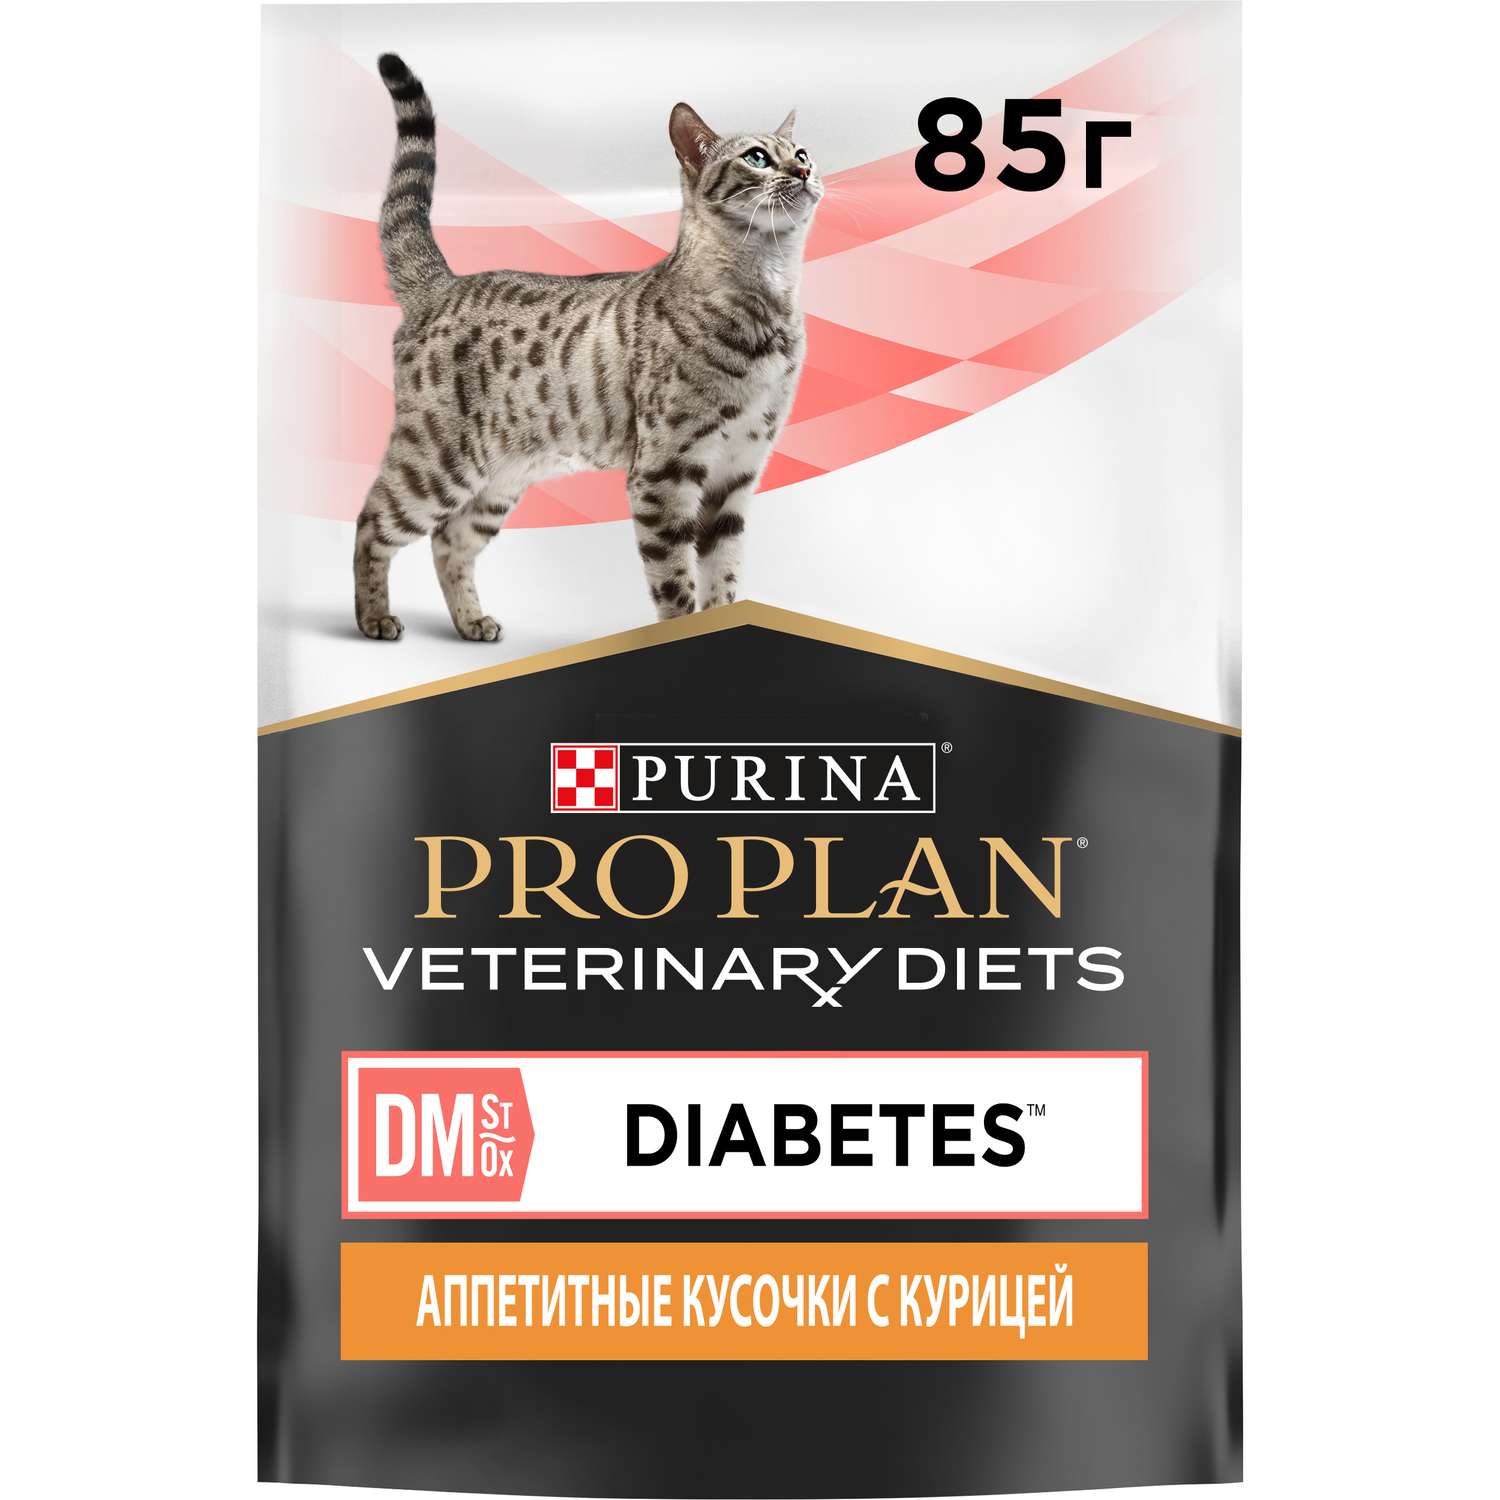 Корм для кошек Purina Pro Plan Veterinary diets 85г с курицей при сахарном диабете влажный в соусе - фото 2